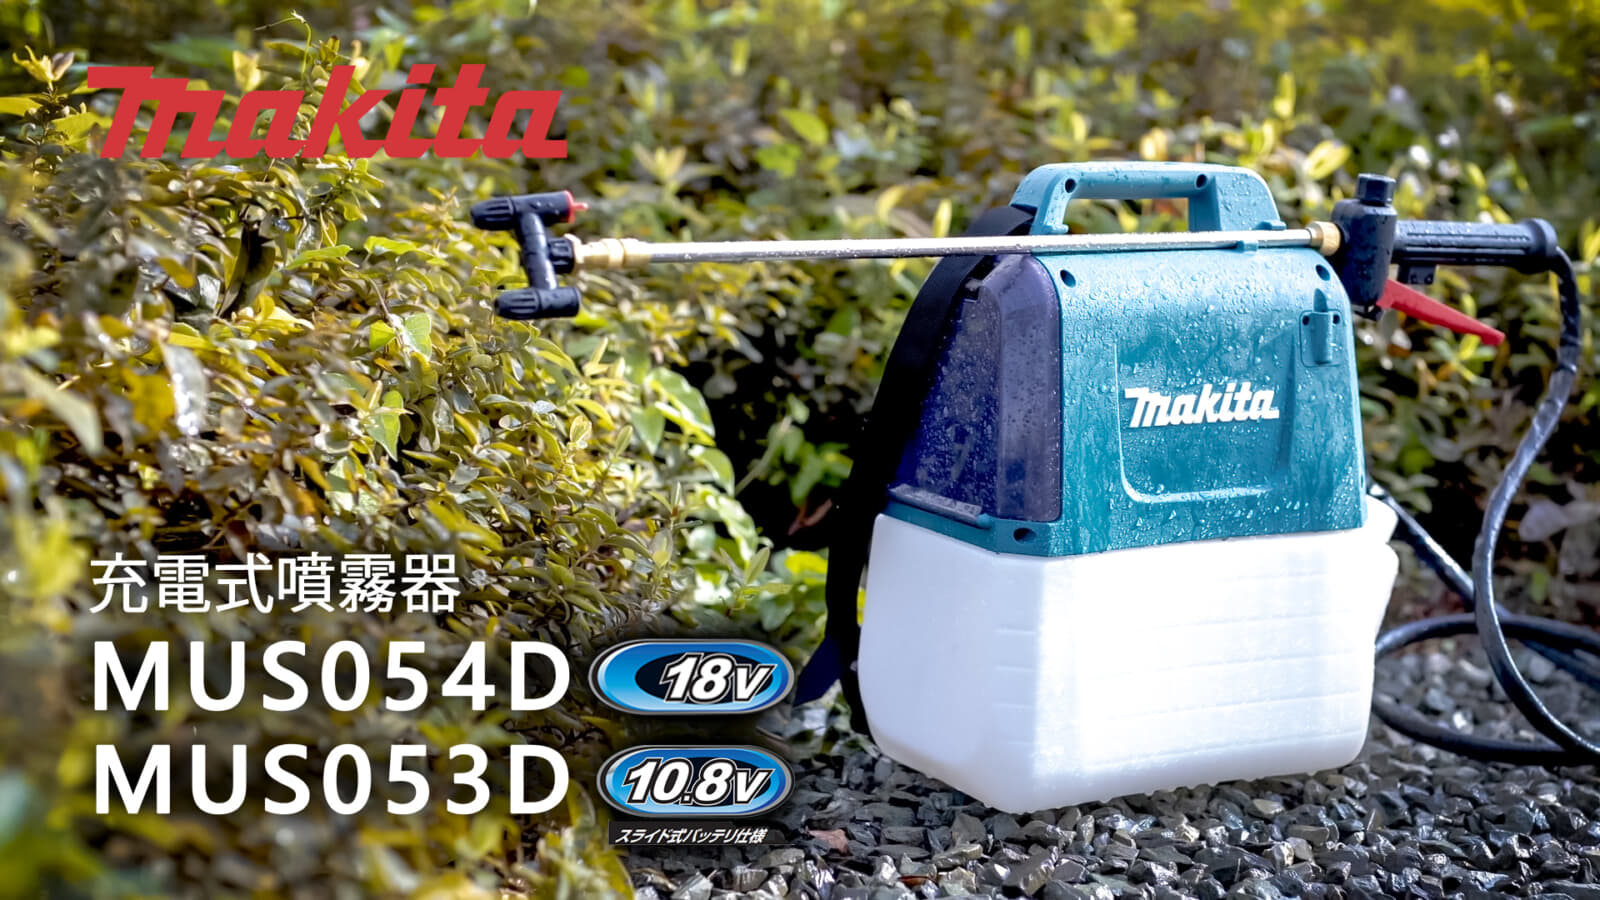 マキタ MUS054D/MUS053D 充電式噴霧器を発売、軽量・コンパクトな肩掛け式